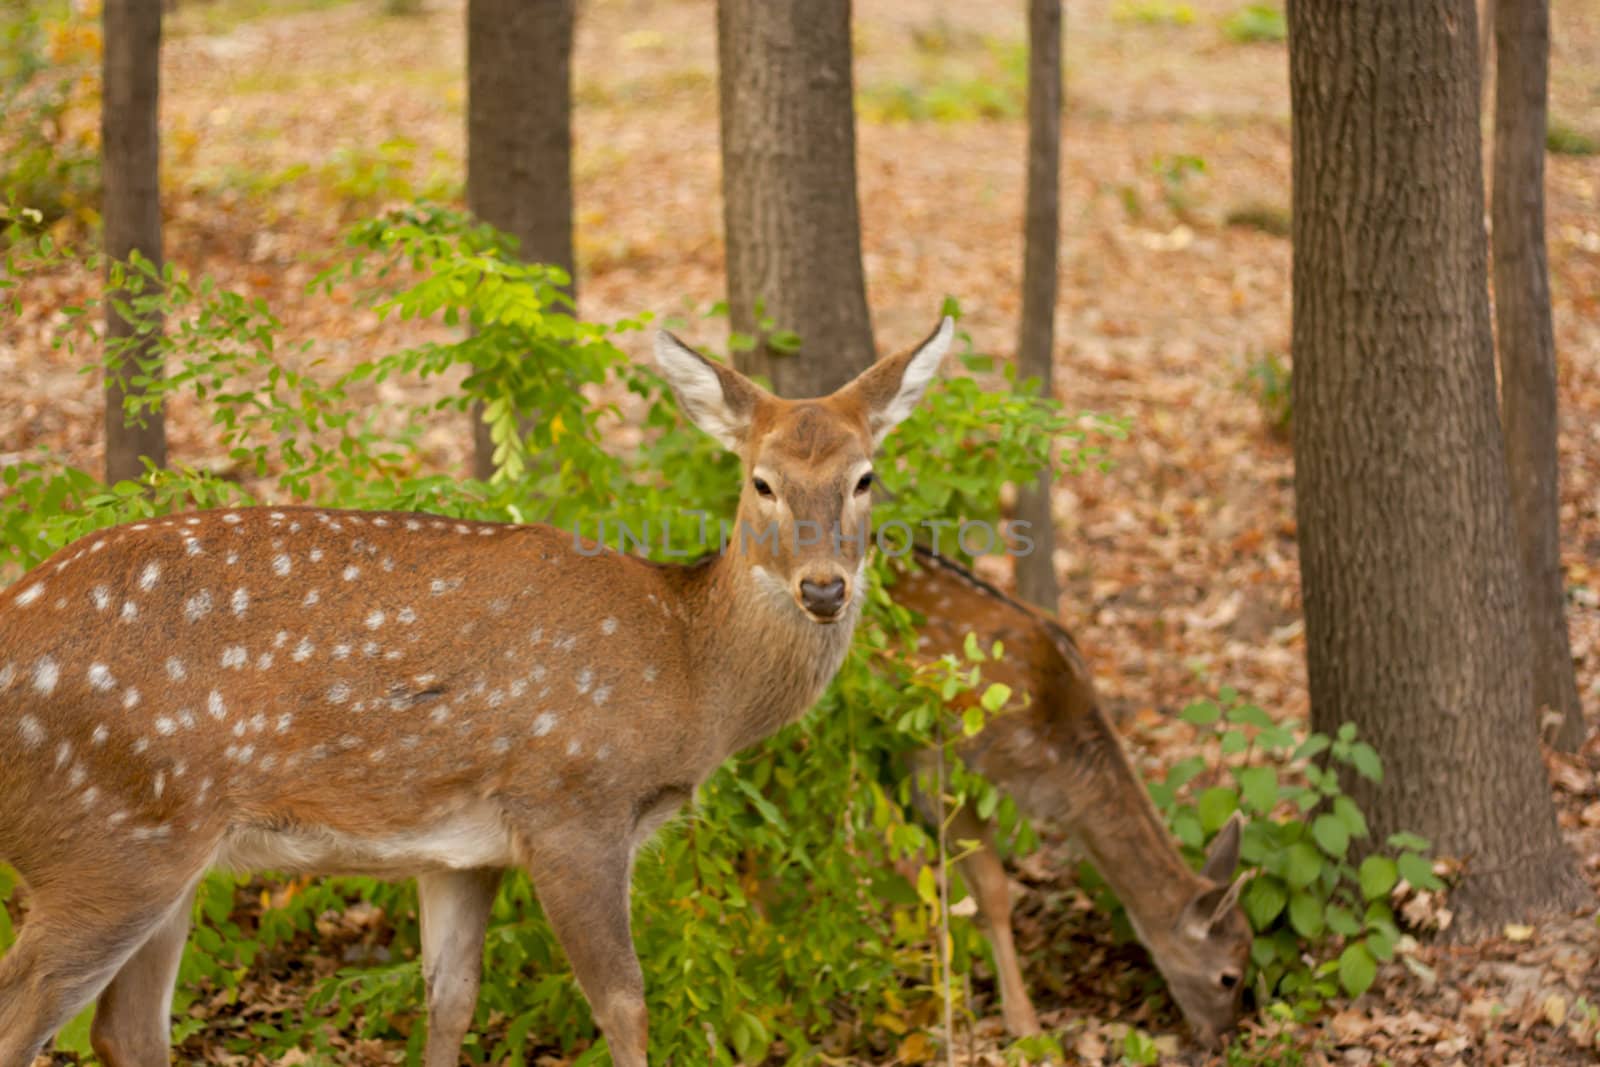 child of the red deer in wood . Bandhavgarh. India.  by schankz